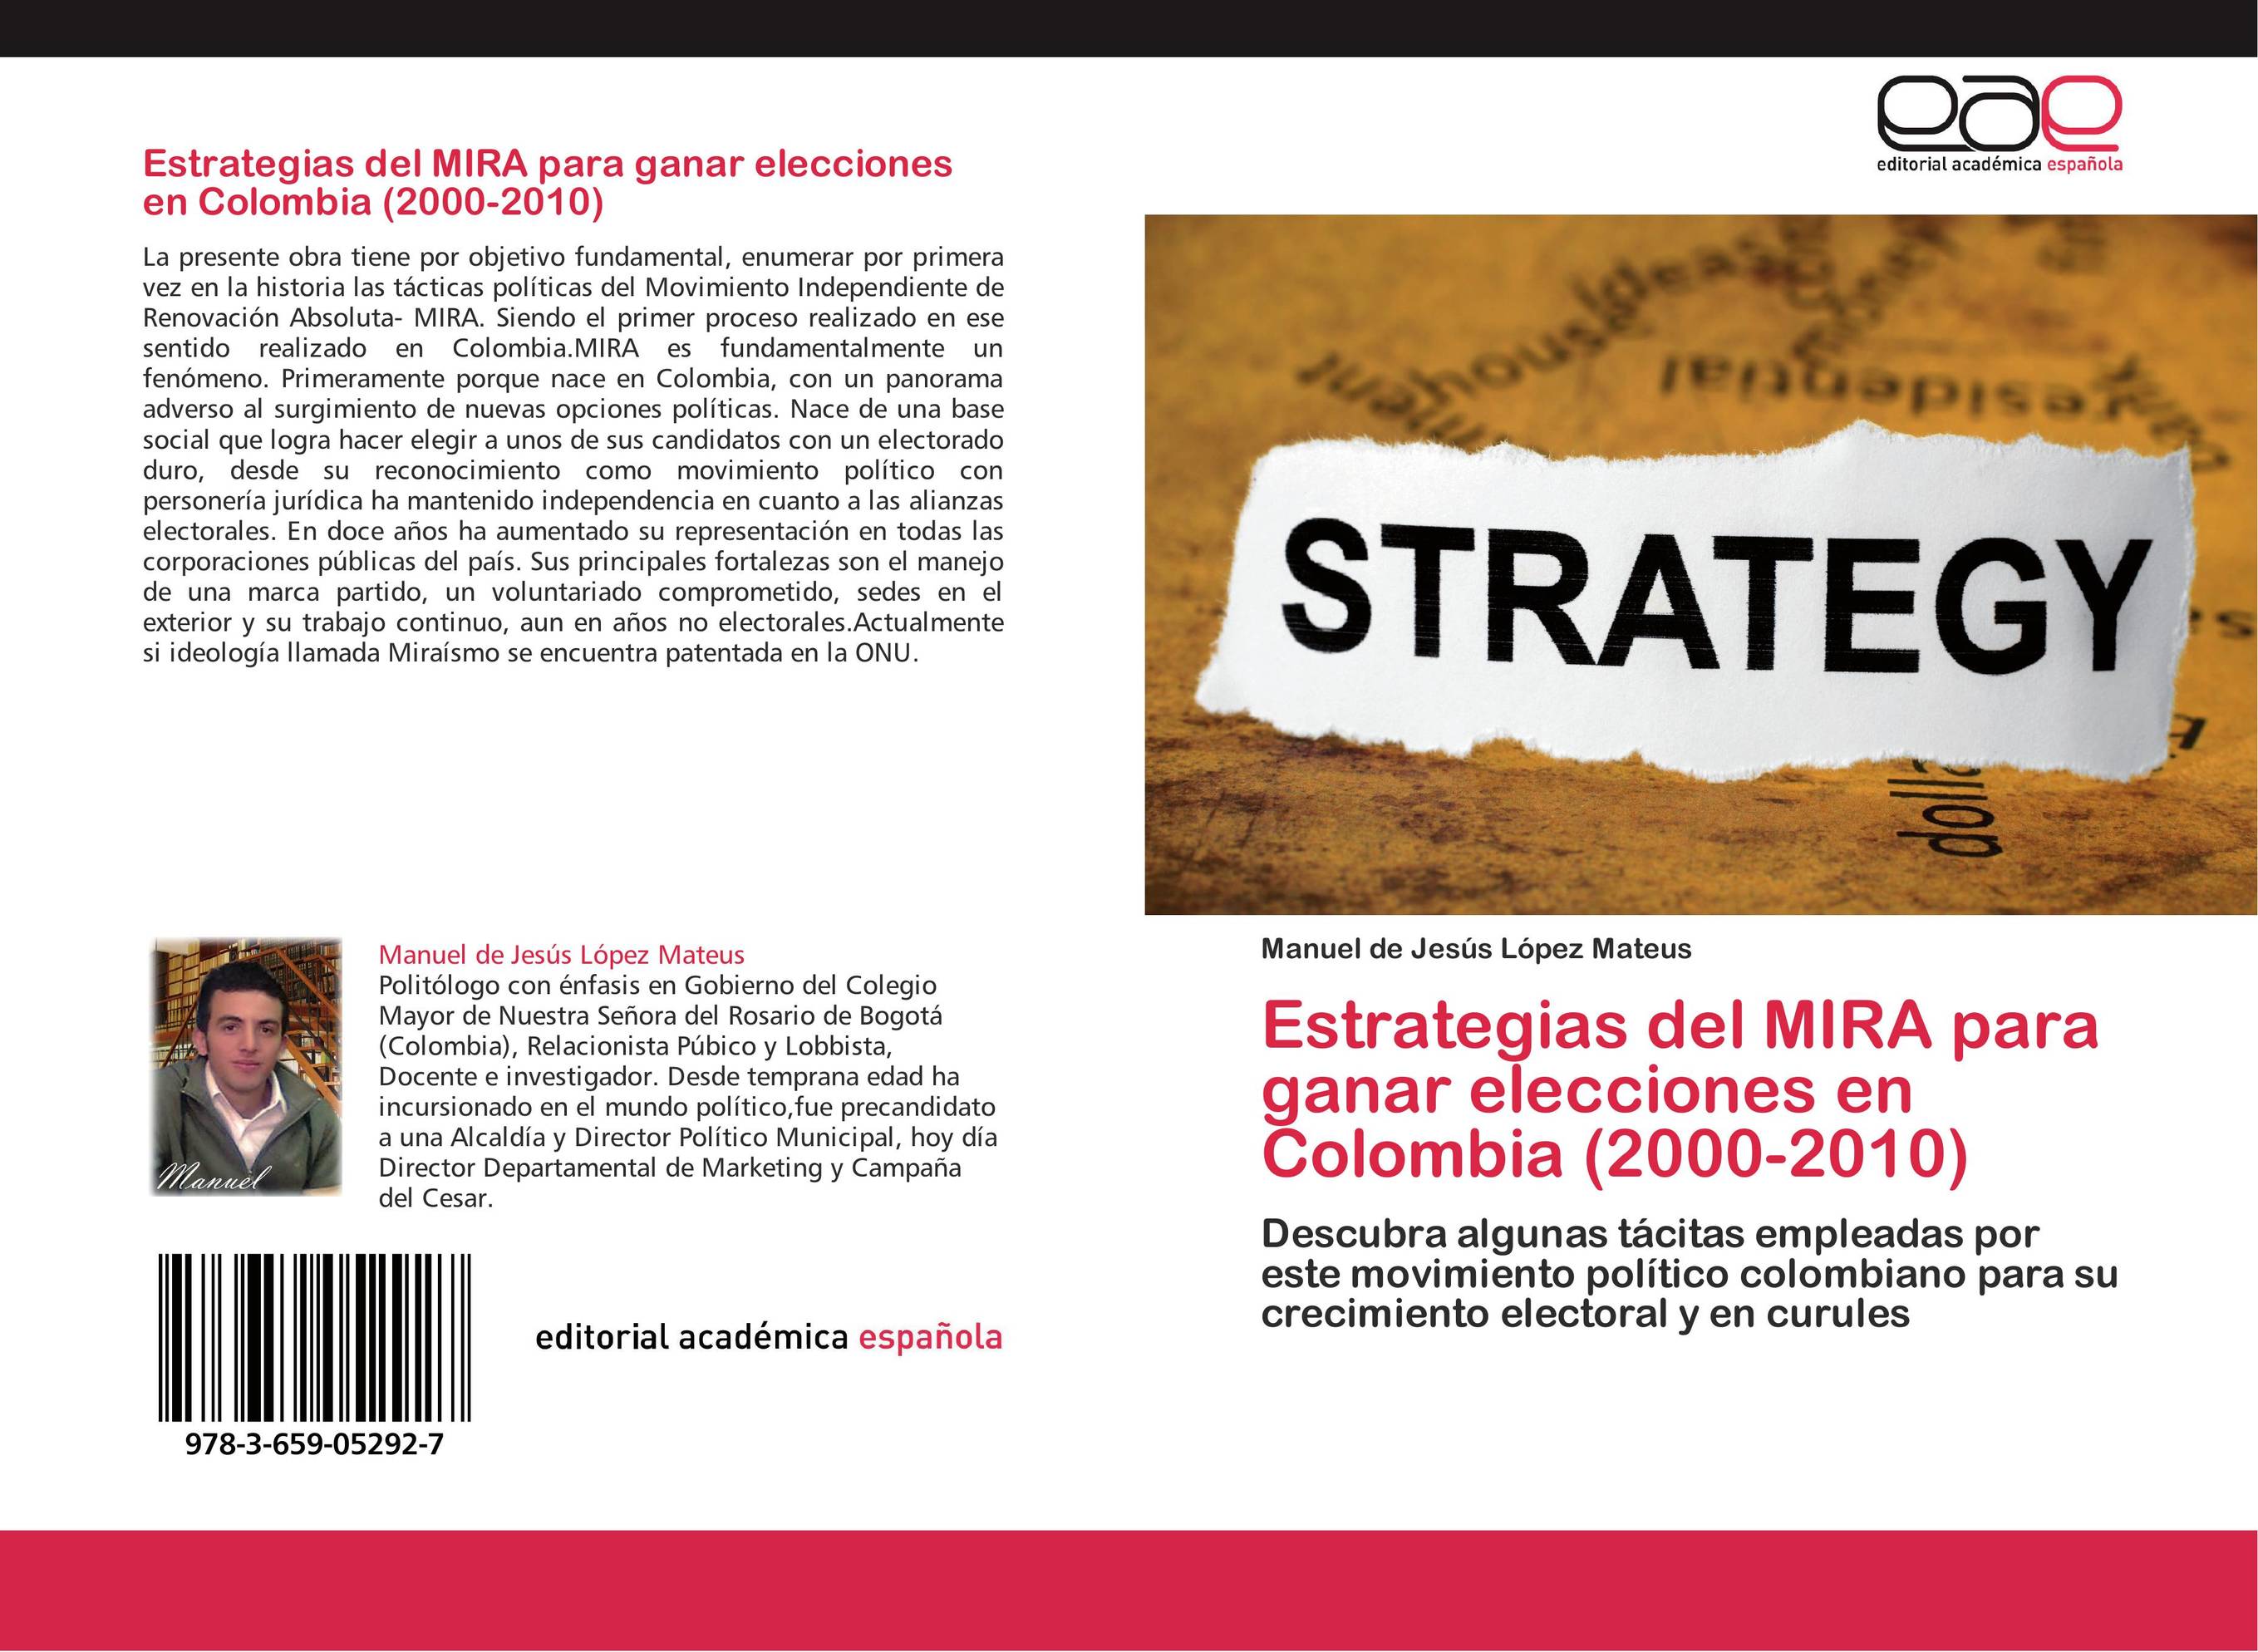 Estrategias del MIRA  para ganar elecciones en Colombia (2000-2010)